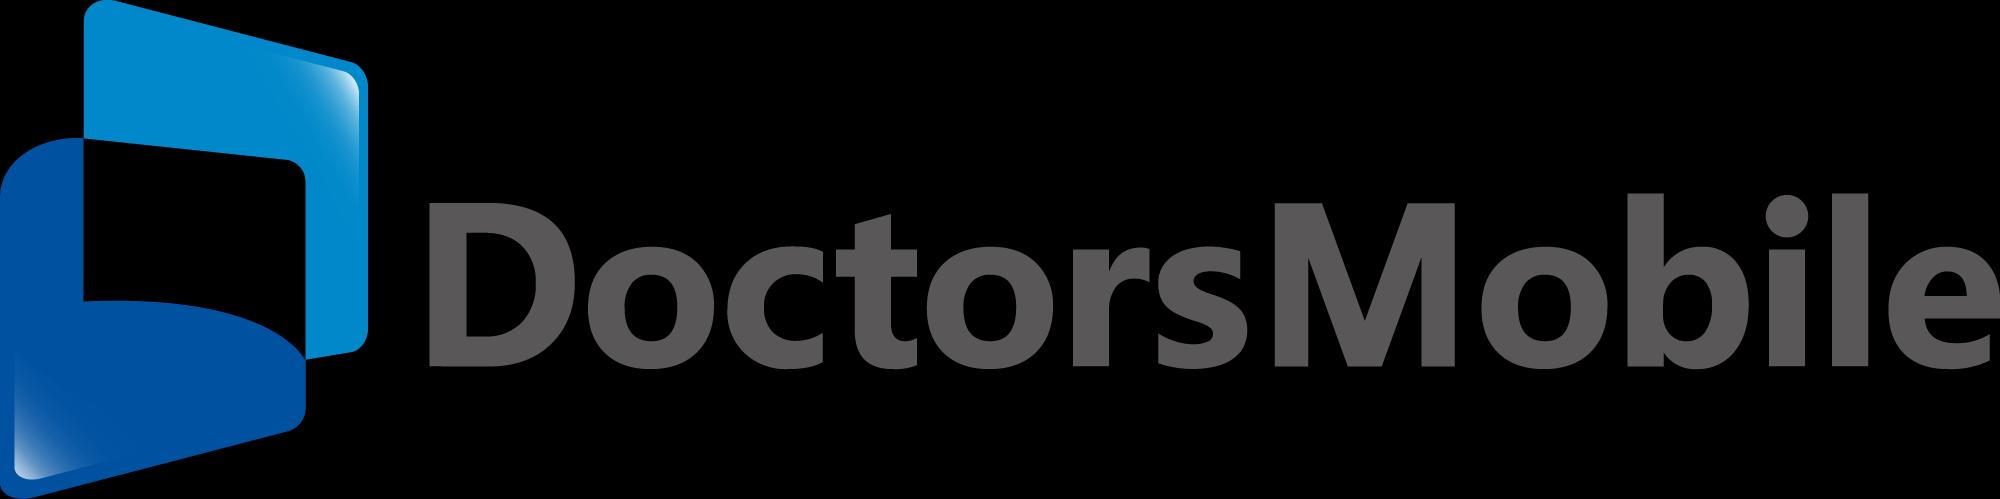 Doctors Mobile (ドクターズモバイル)_logo